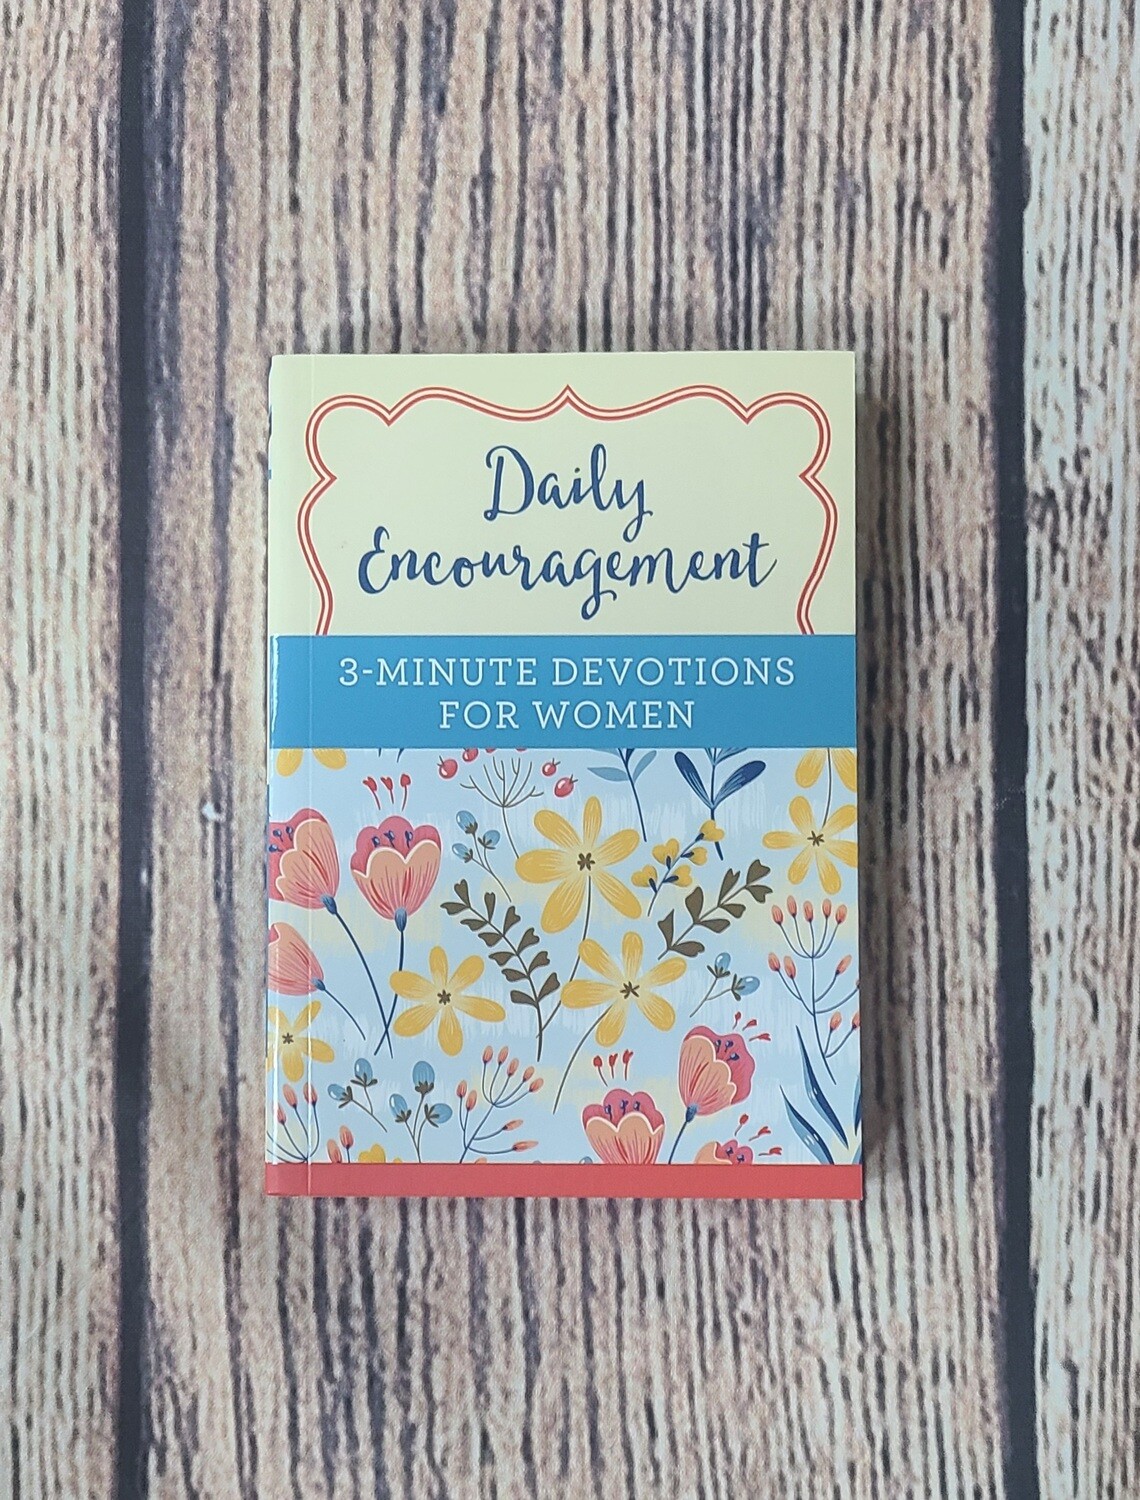 Daily Encouragement: 3-Minute Devotions for Women by Deborah D. Cole - Great Condition